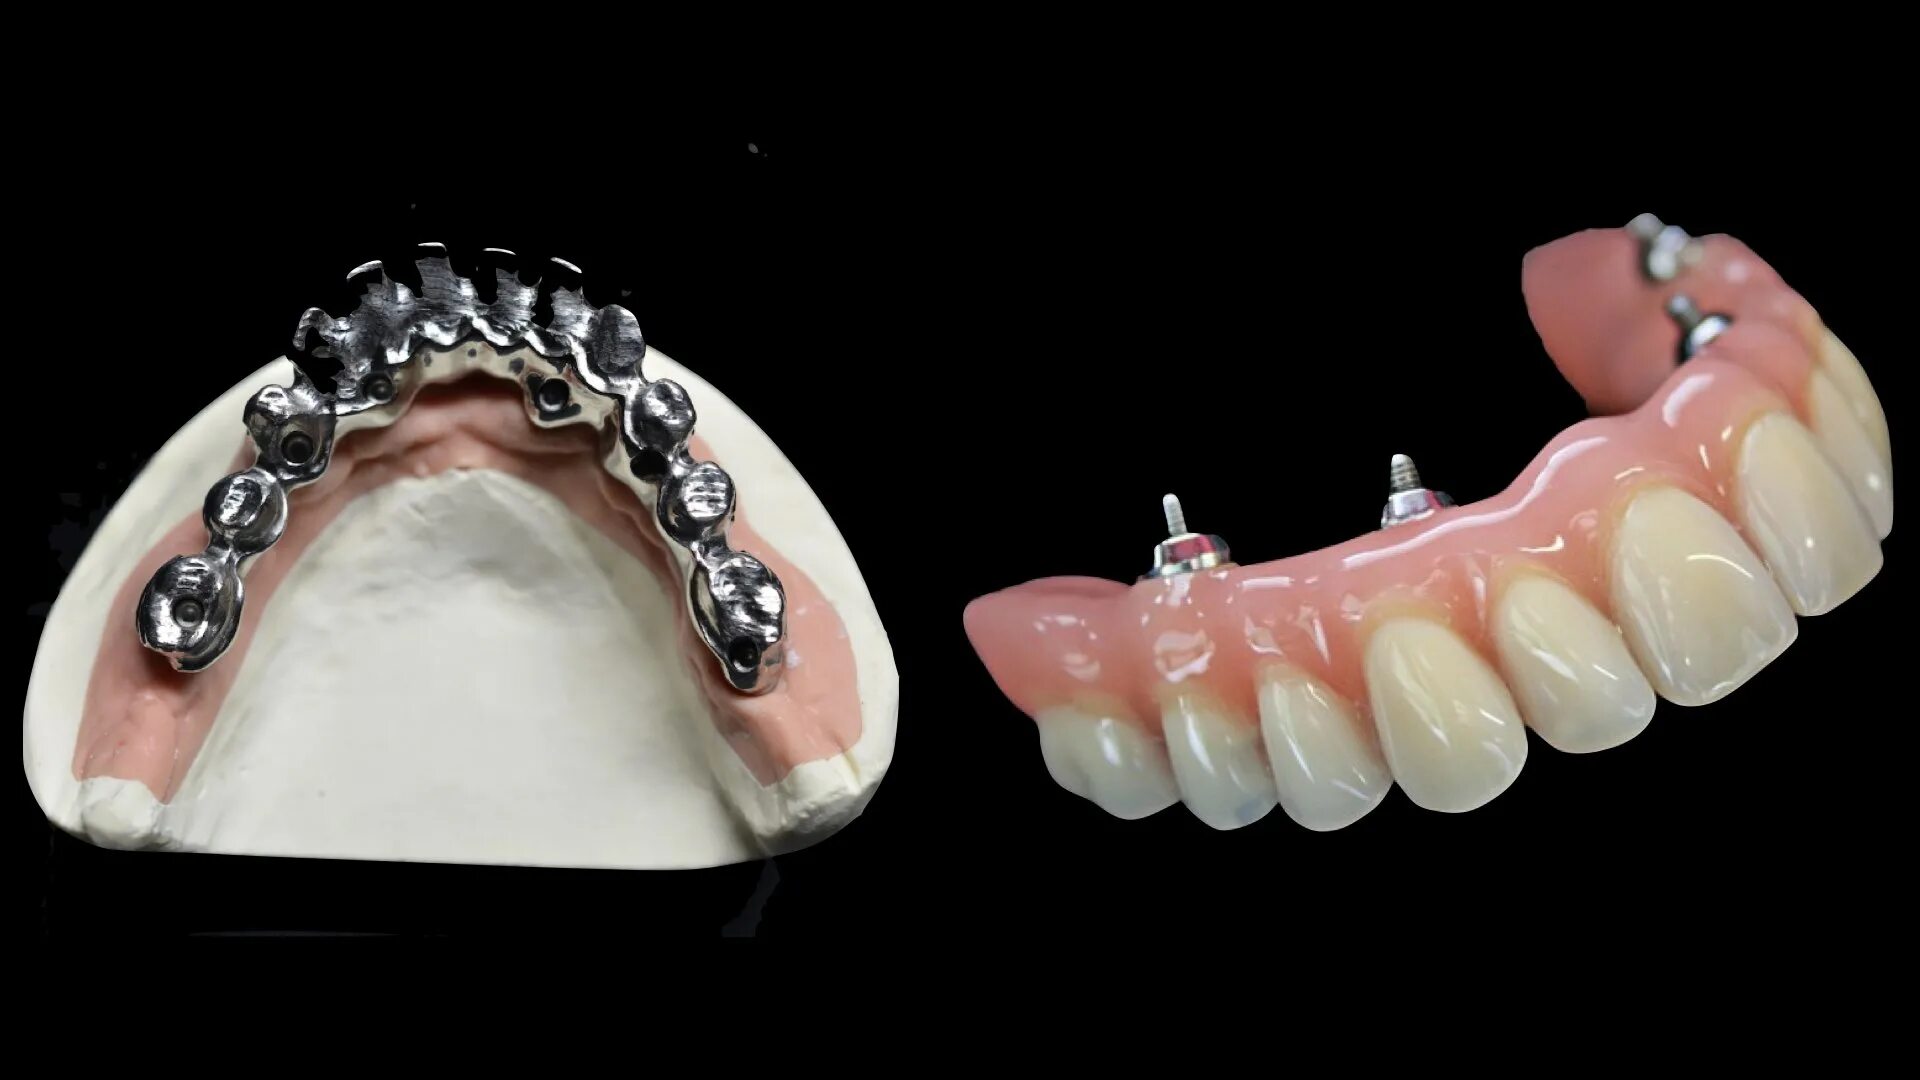 Несъемные зубные протезы на 4 имплантах. All on 4 Nobel Parallel армированный протез. Несъемные протезы на имплантатах. Несъёмные зубные протезы на 4.